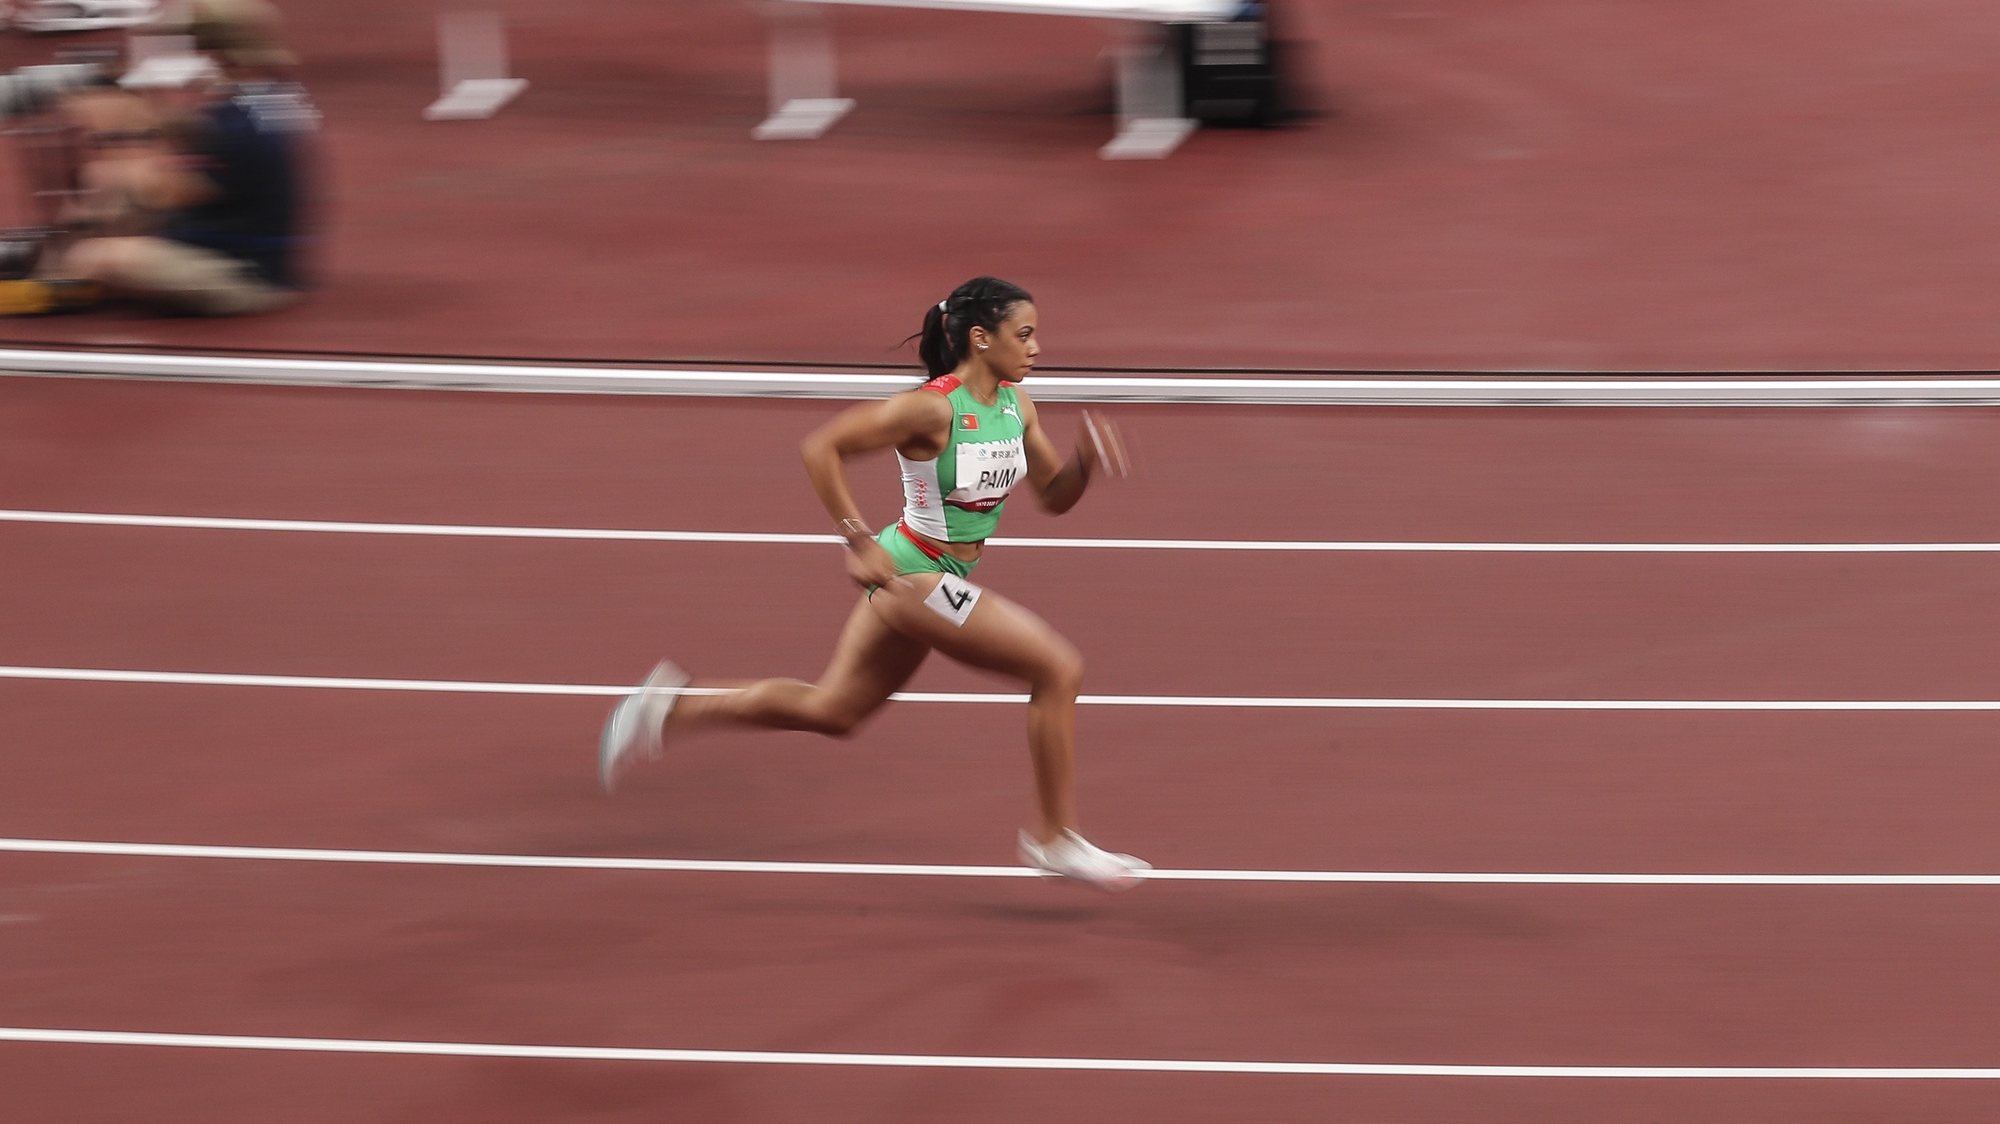 A atleta portuguesa, Carina Paim em ação na prova feminina de 400 metros T20, esta tarde no Estádio Olímpico de Tóquio, nos jogos Paralímpicos de Toquio 2020, Japão, 30 de agosto de 2021. MIGUEL A. LOPES/LUSA